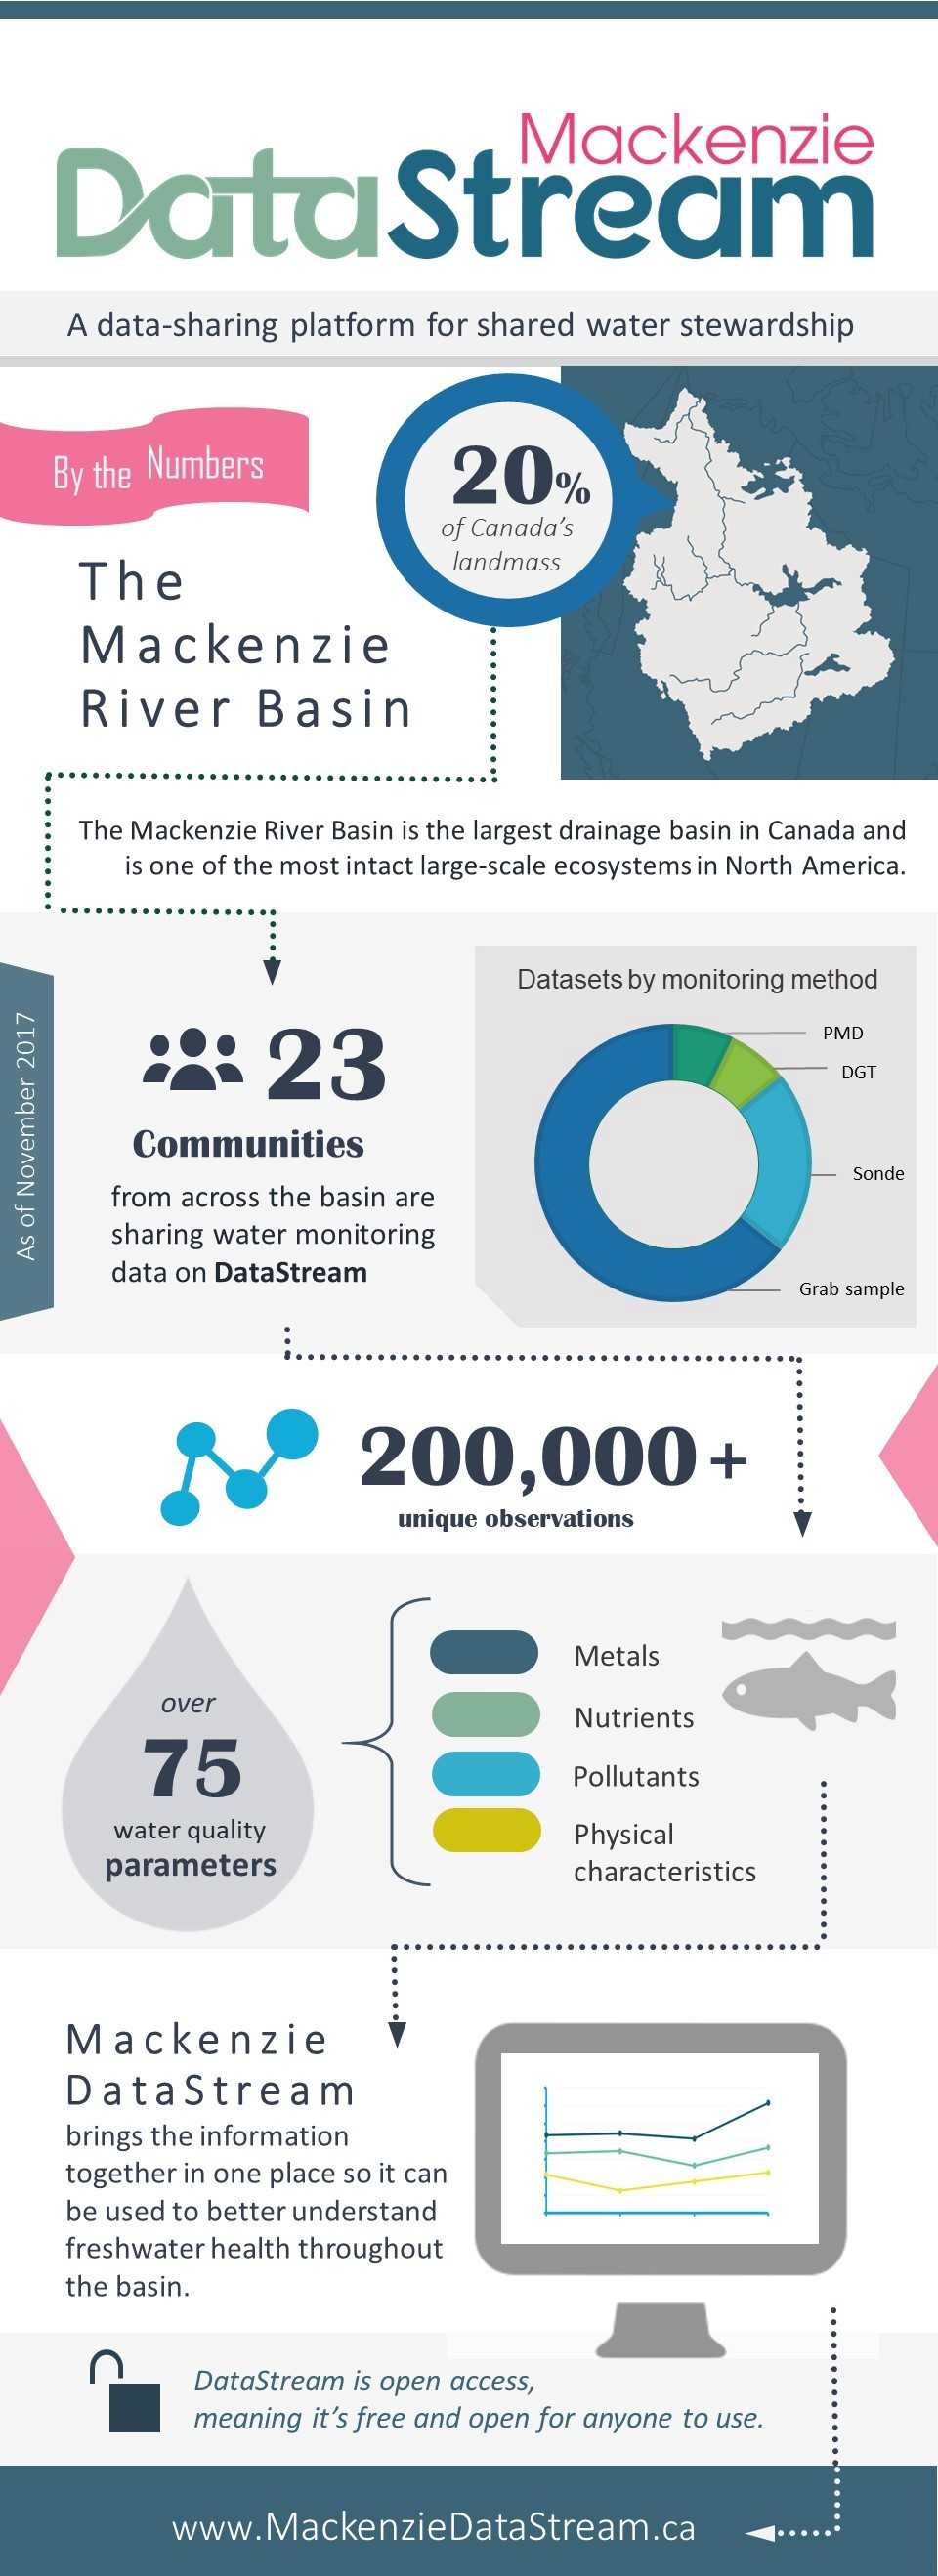 Mackenzie DataStream infographic